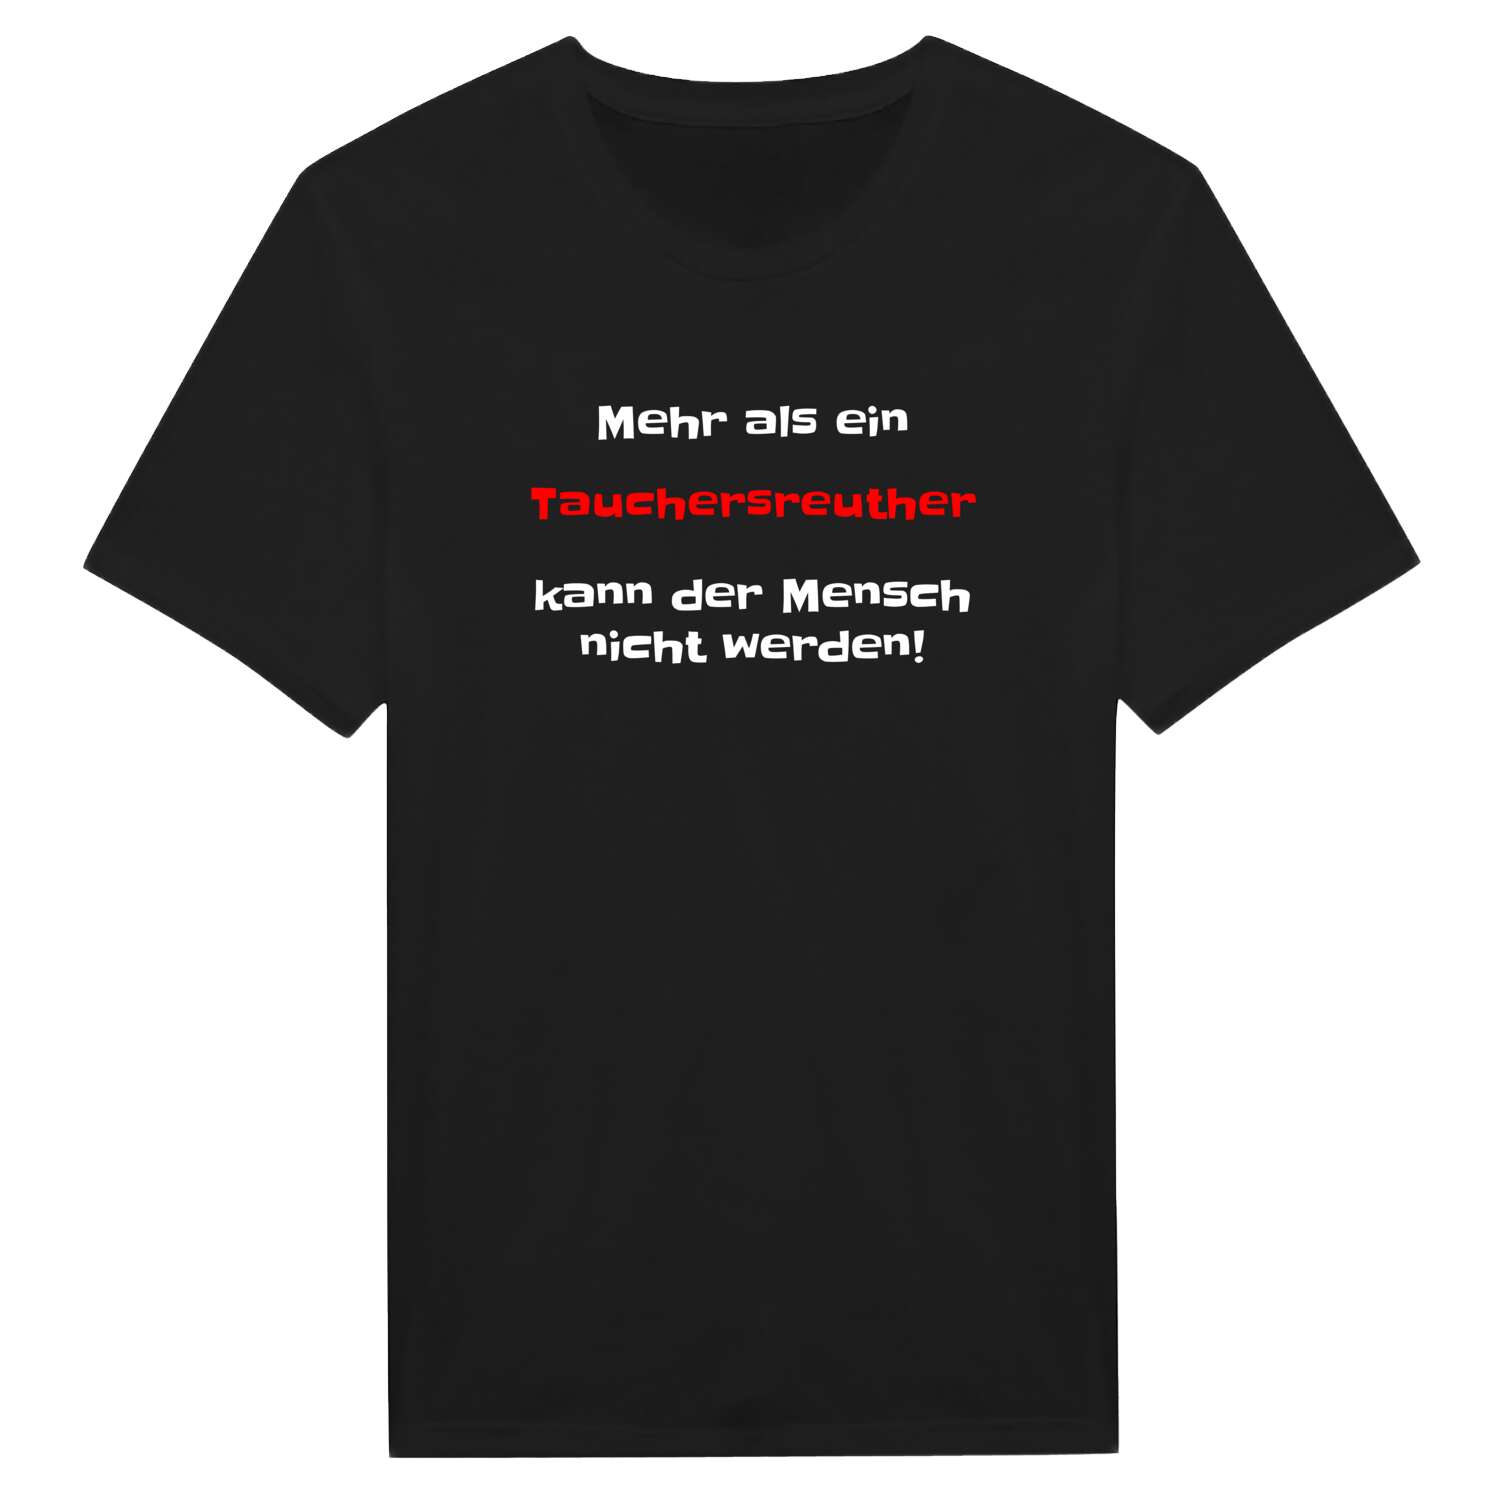 Tauchersreuth T-Shirt »Mehr als ein«